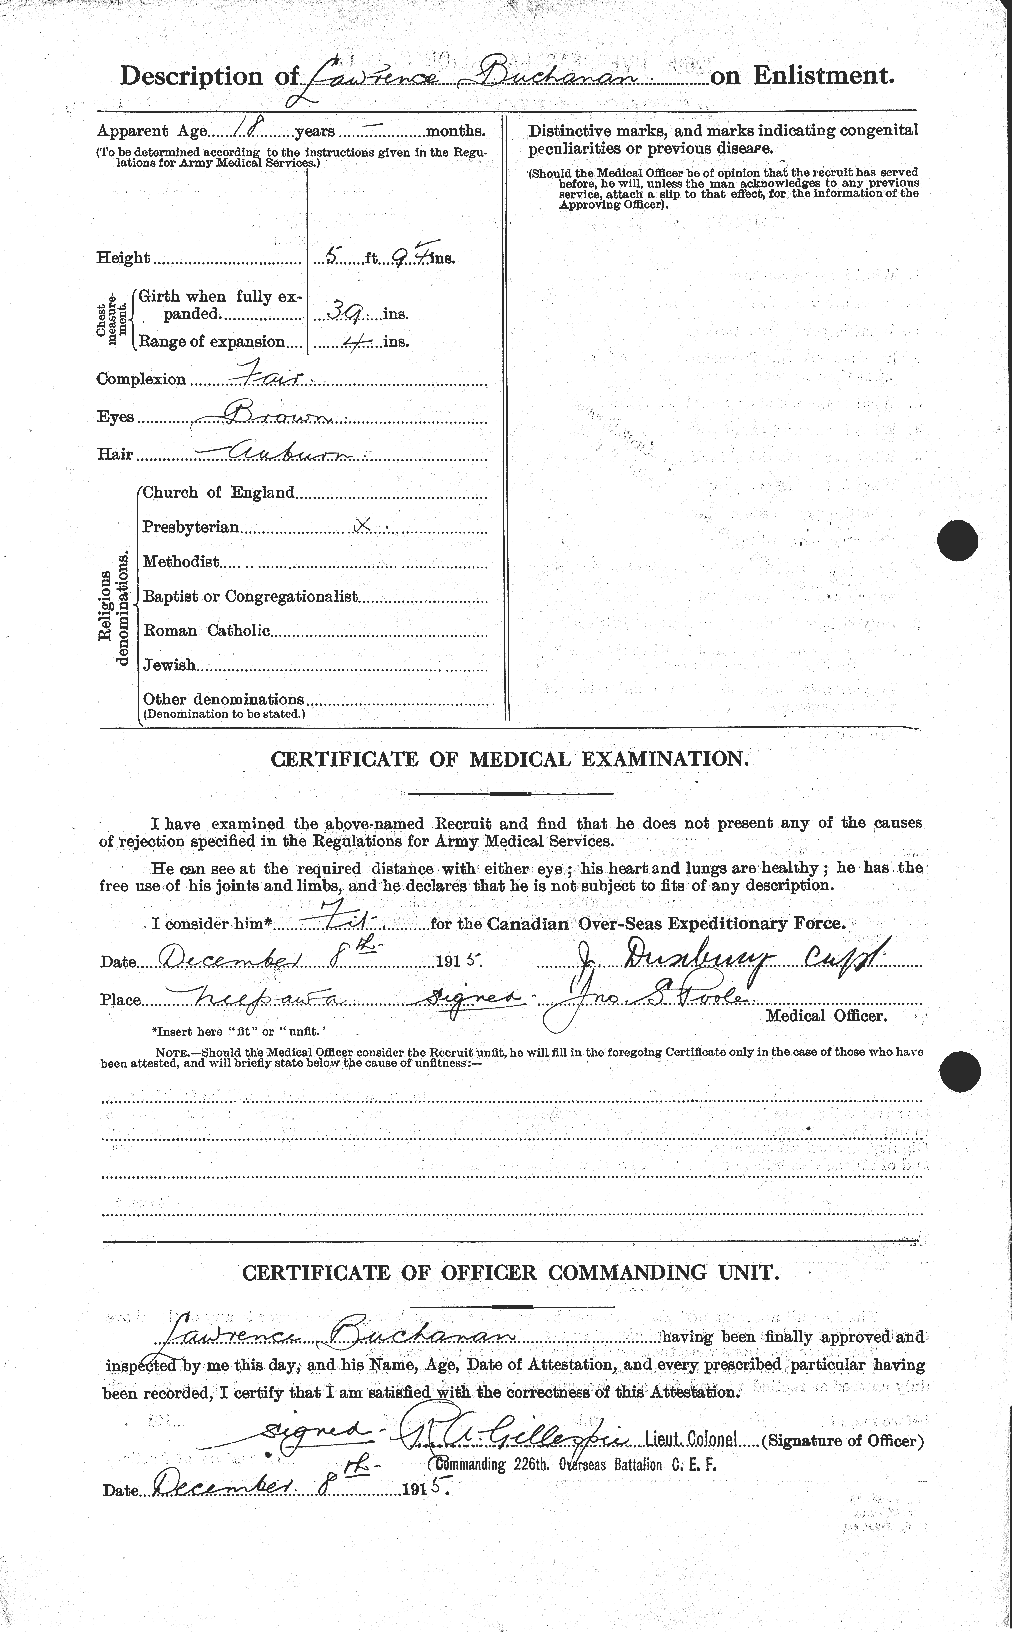 Dossiers du Personnel de la Première Guerre mondiale - CEC 271571b